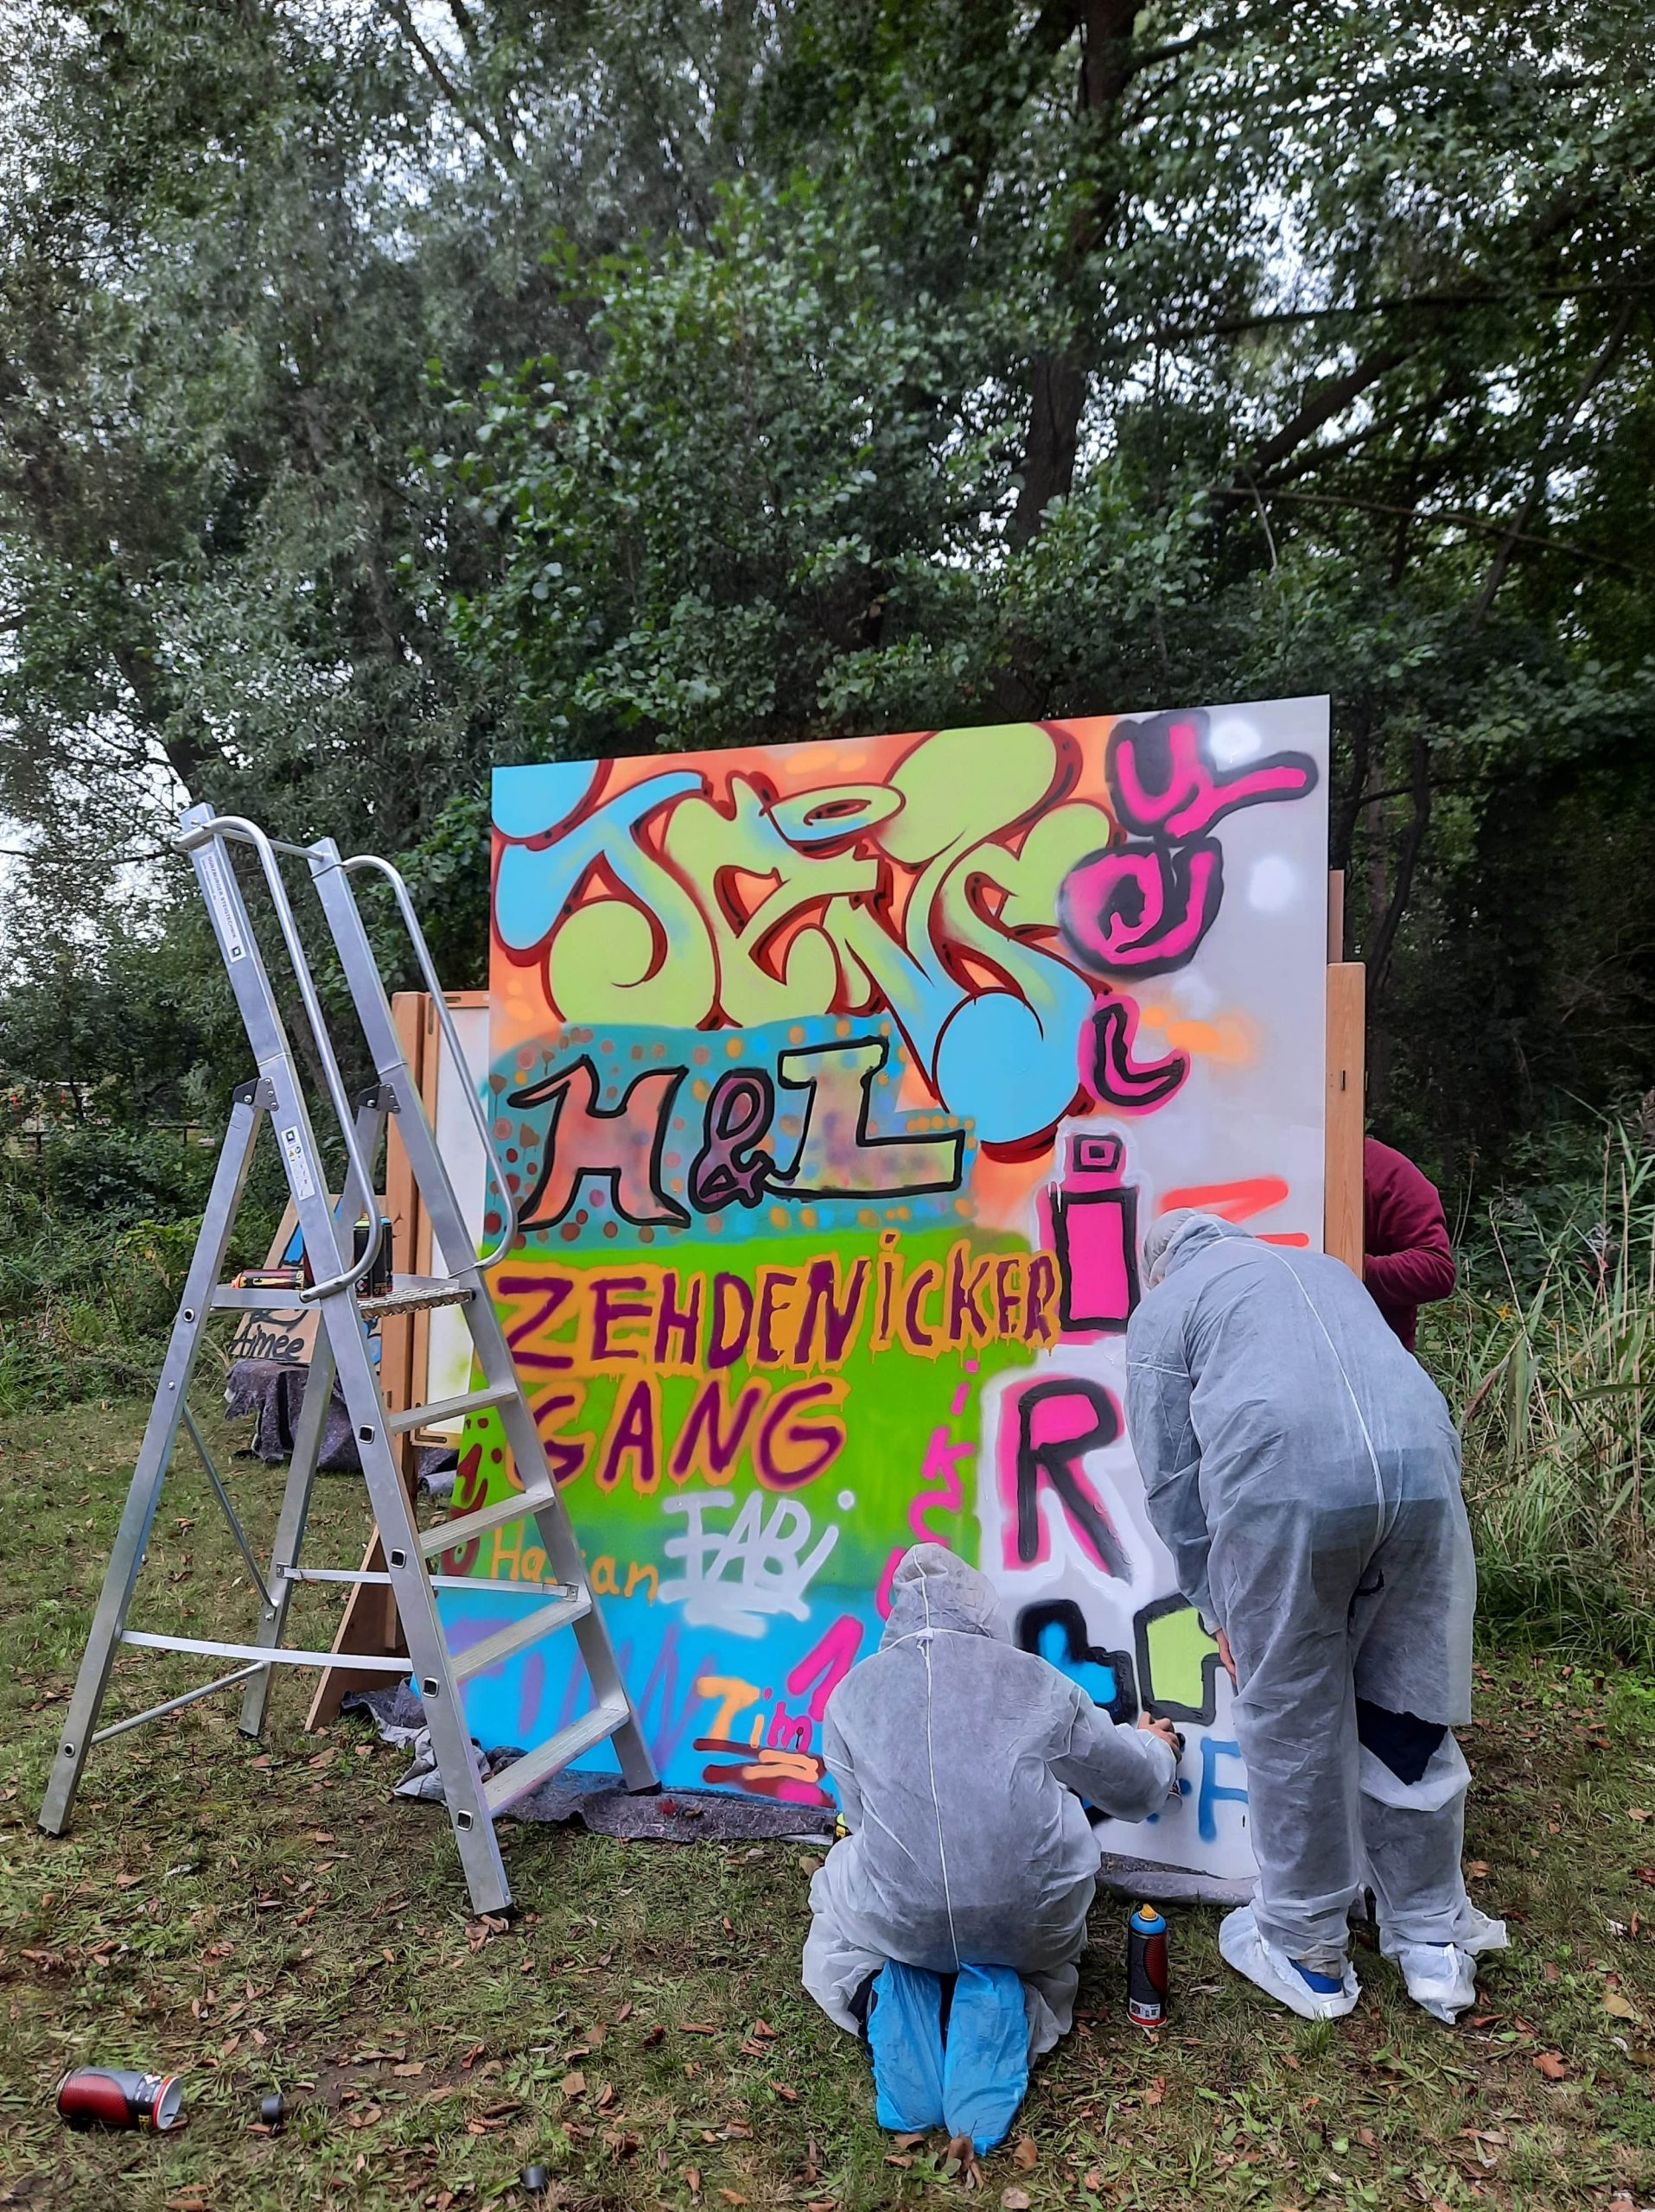 Graffitiworkshop anlässlich der 2. Kinder- und Jugendkonferenz Oberhavel am Standort Zehdenick.